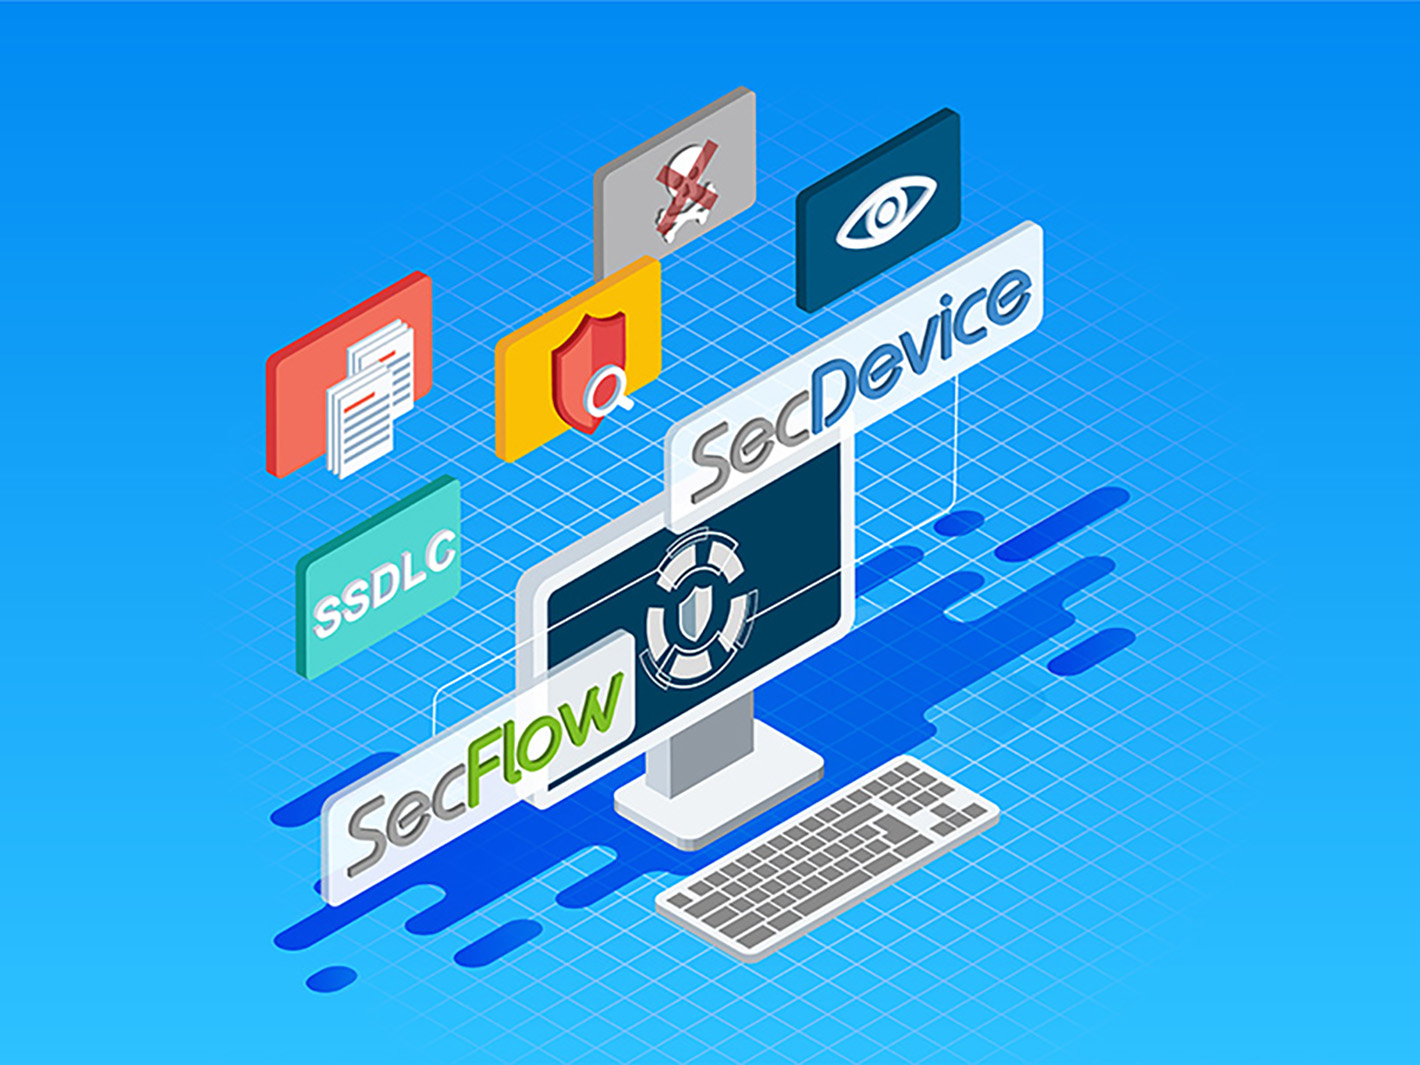 全球知名 IoT 設備商運用 HERCULES SecFlow與 HERCULES SecDevice 落實安全開發流程 (SSDLC)